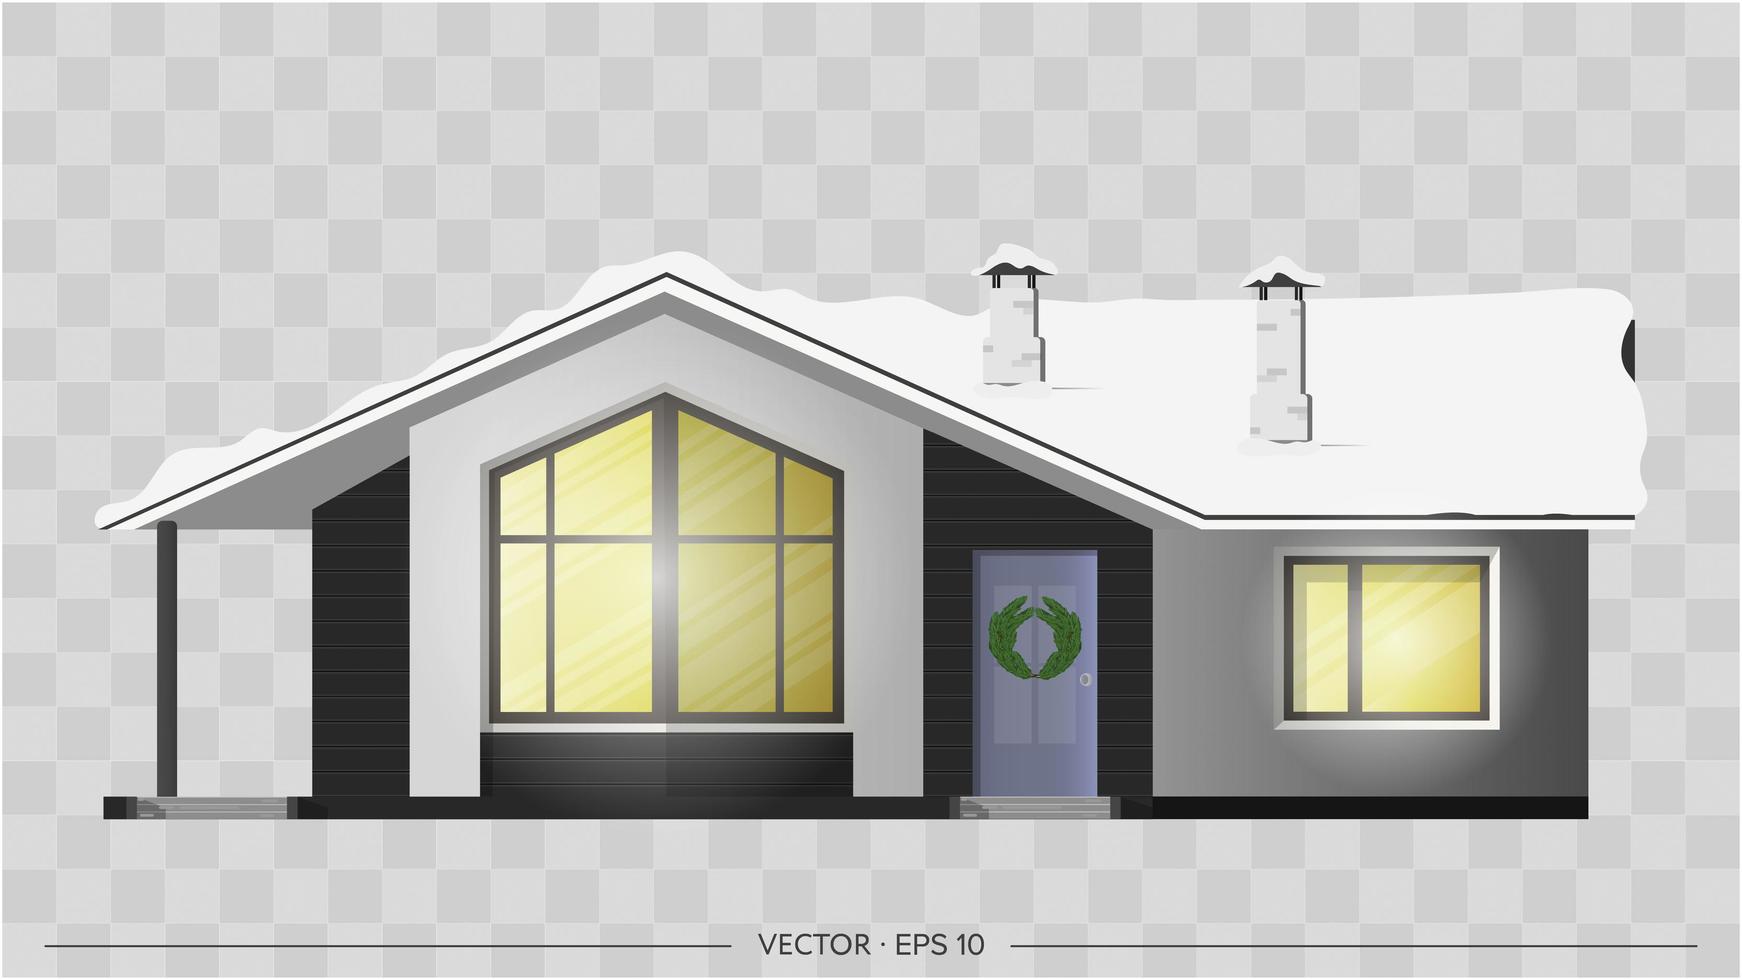 casa moderna per il design invernale. casolare, casa di città. visualizzazione architettonica del casolare all'esterno. tetto nella neve. illustrazione vettoriale realistica.